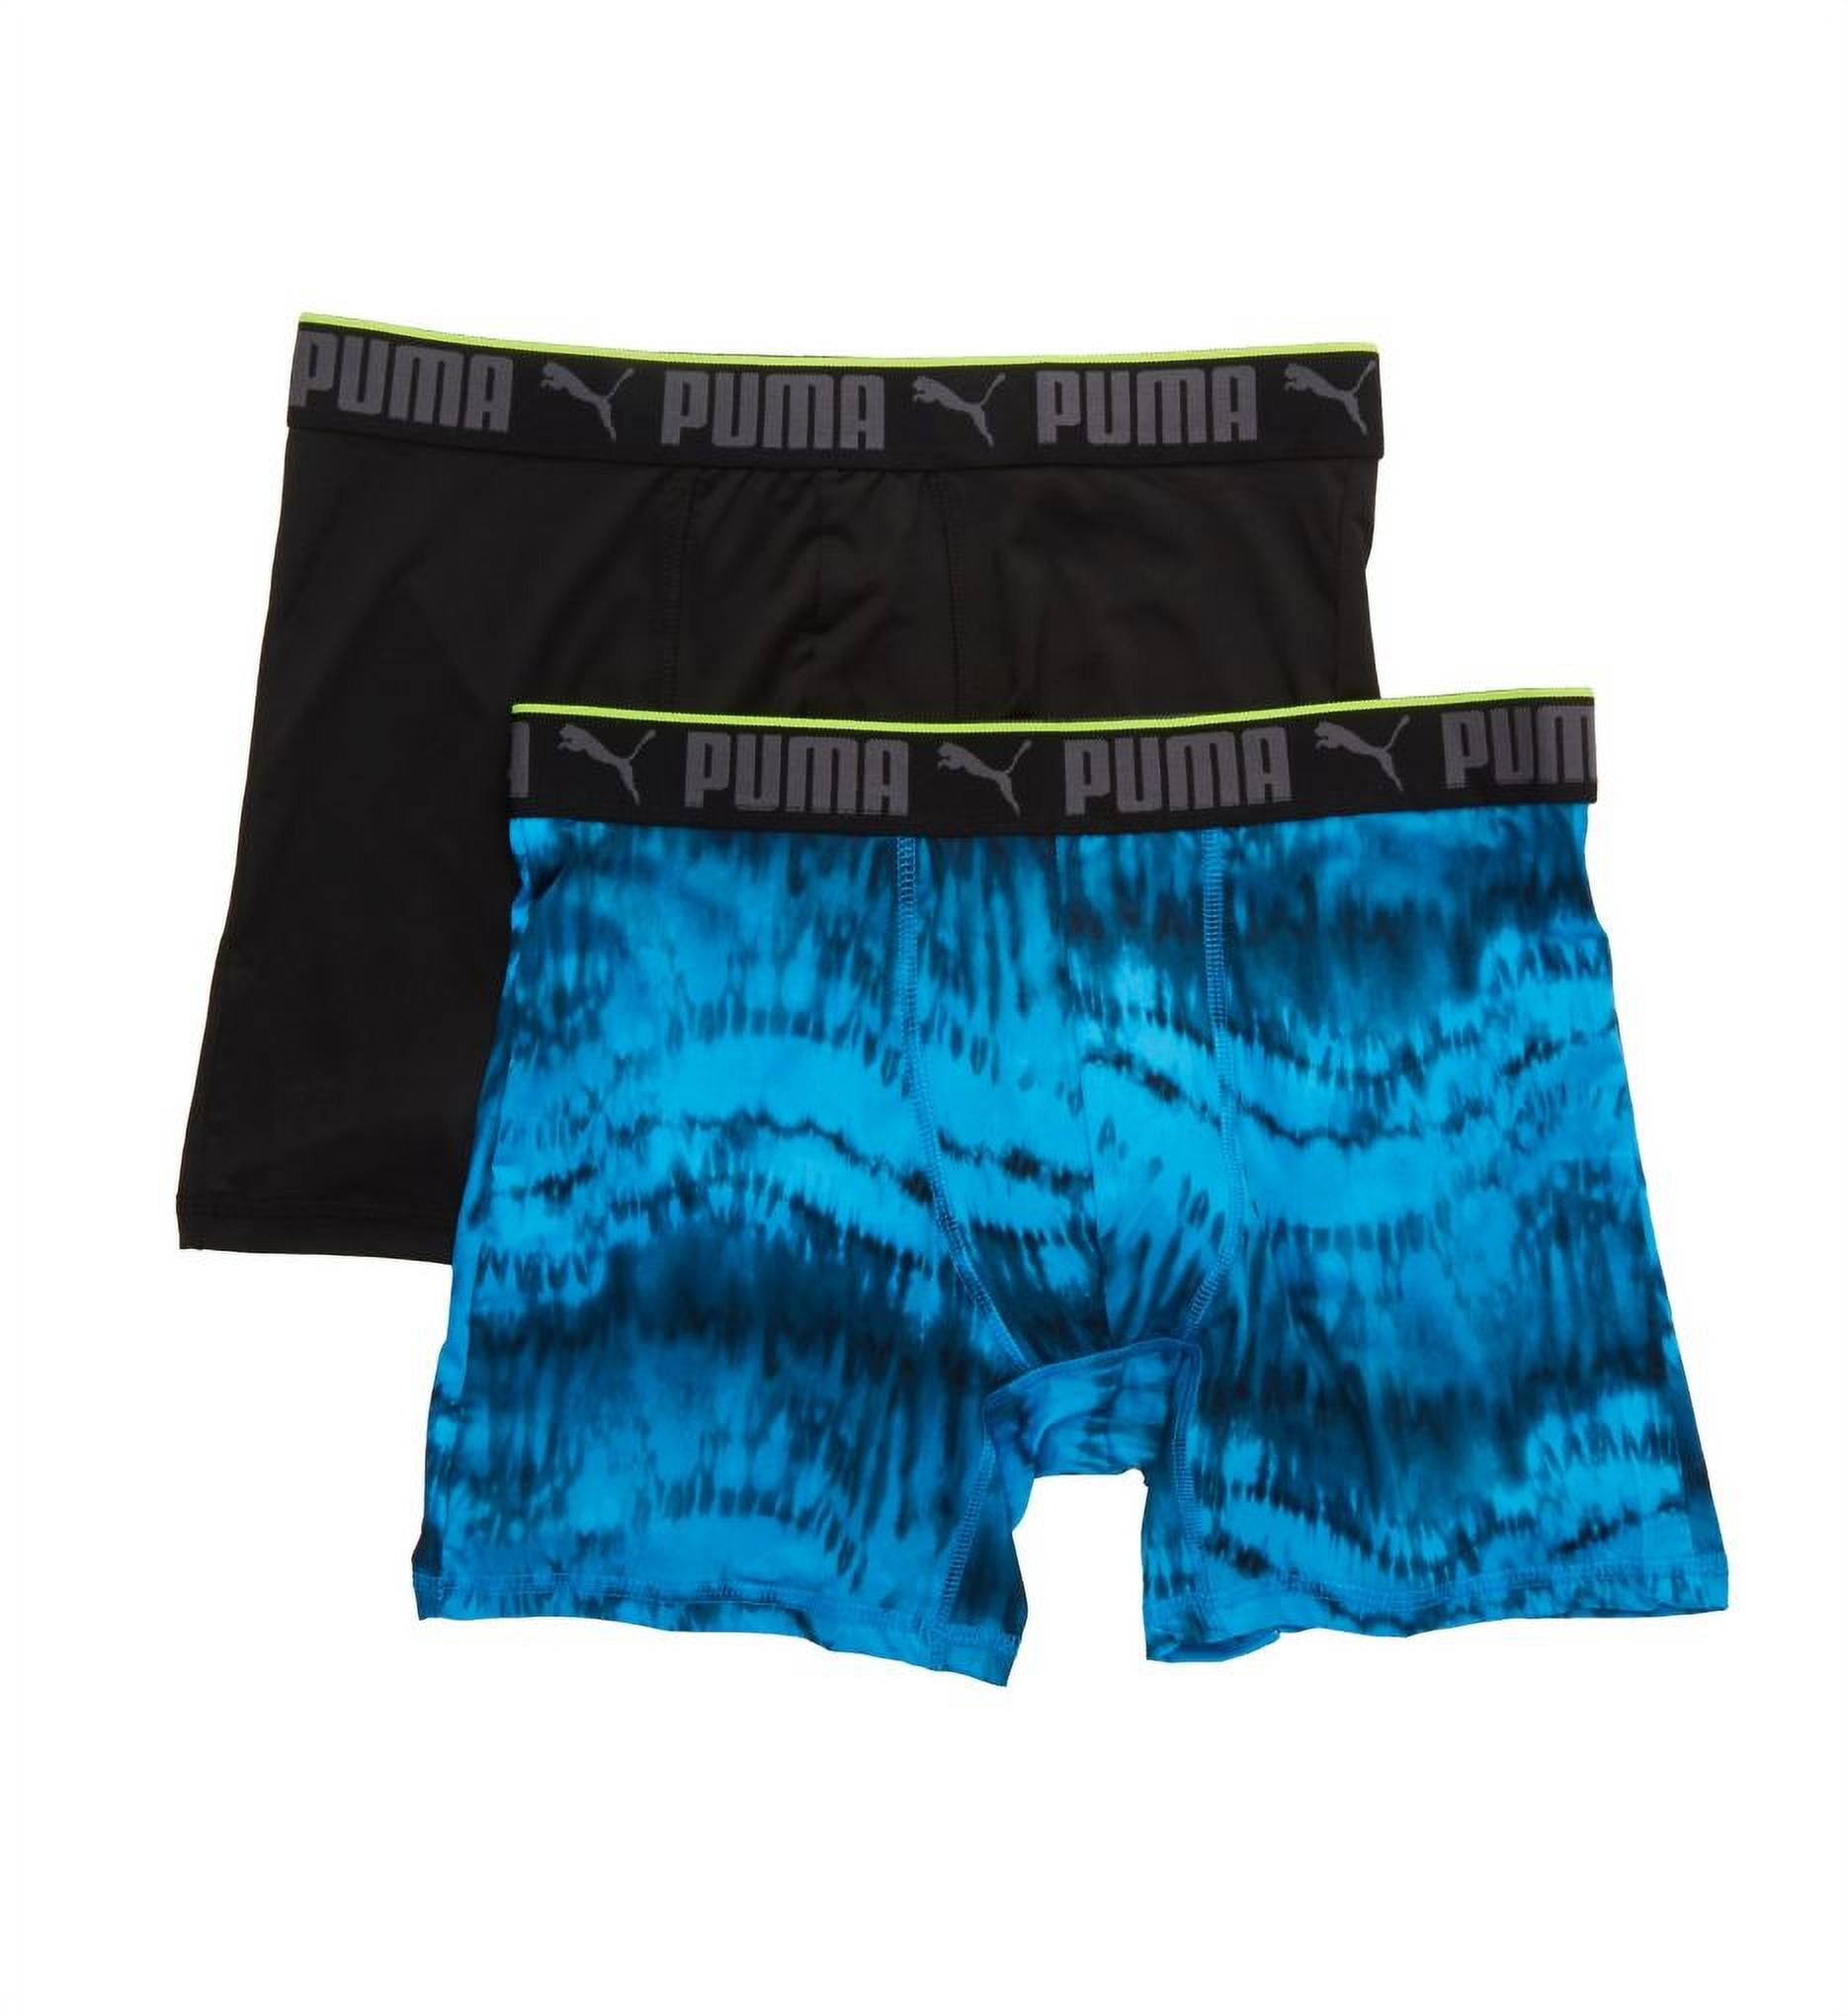 Puma Mens Briefs 2 Pack Basic Underwear